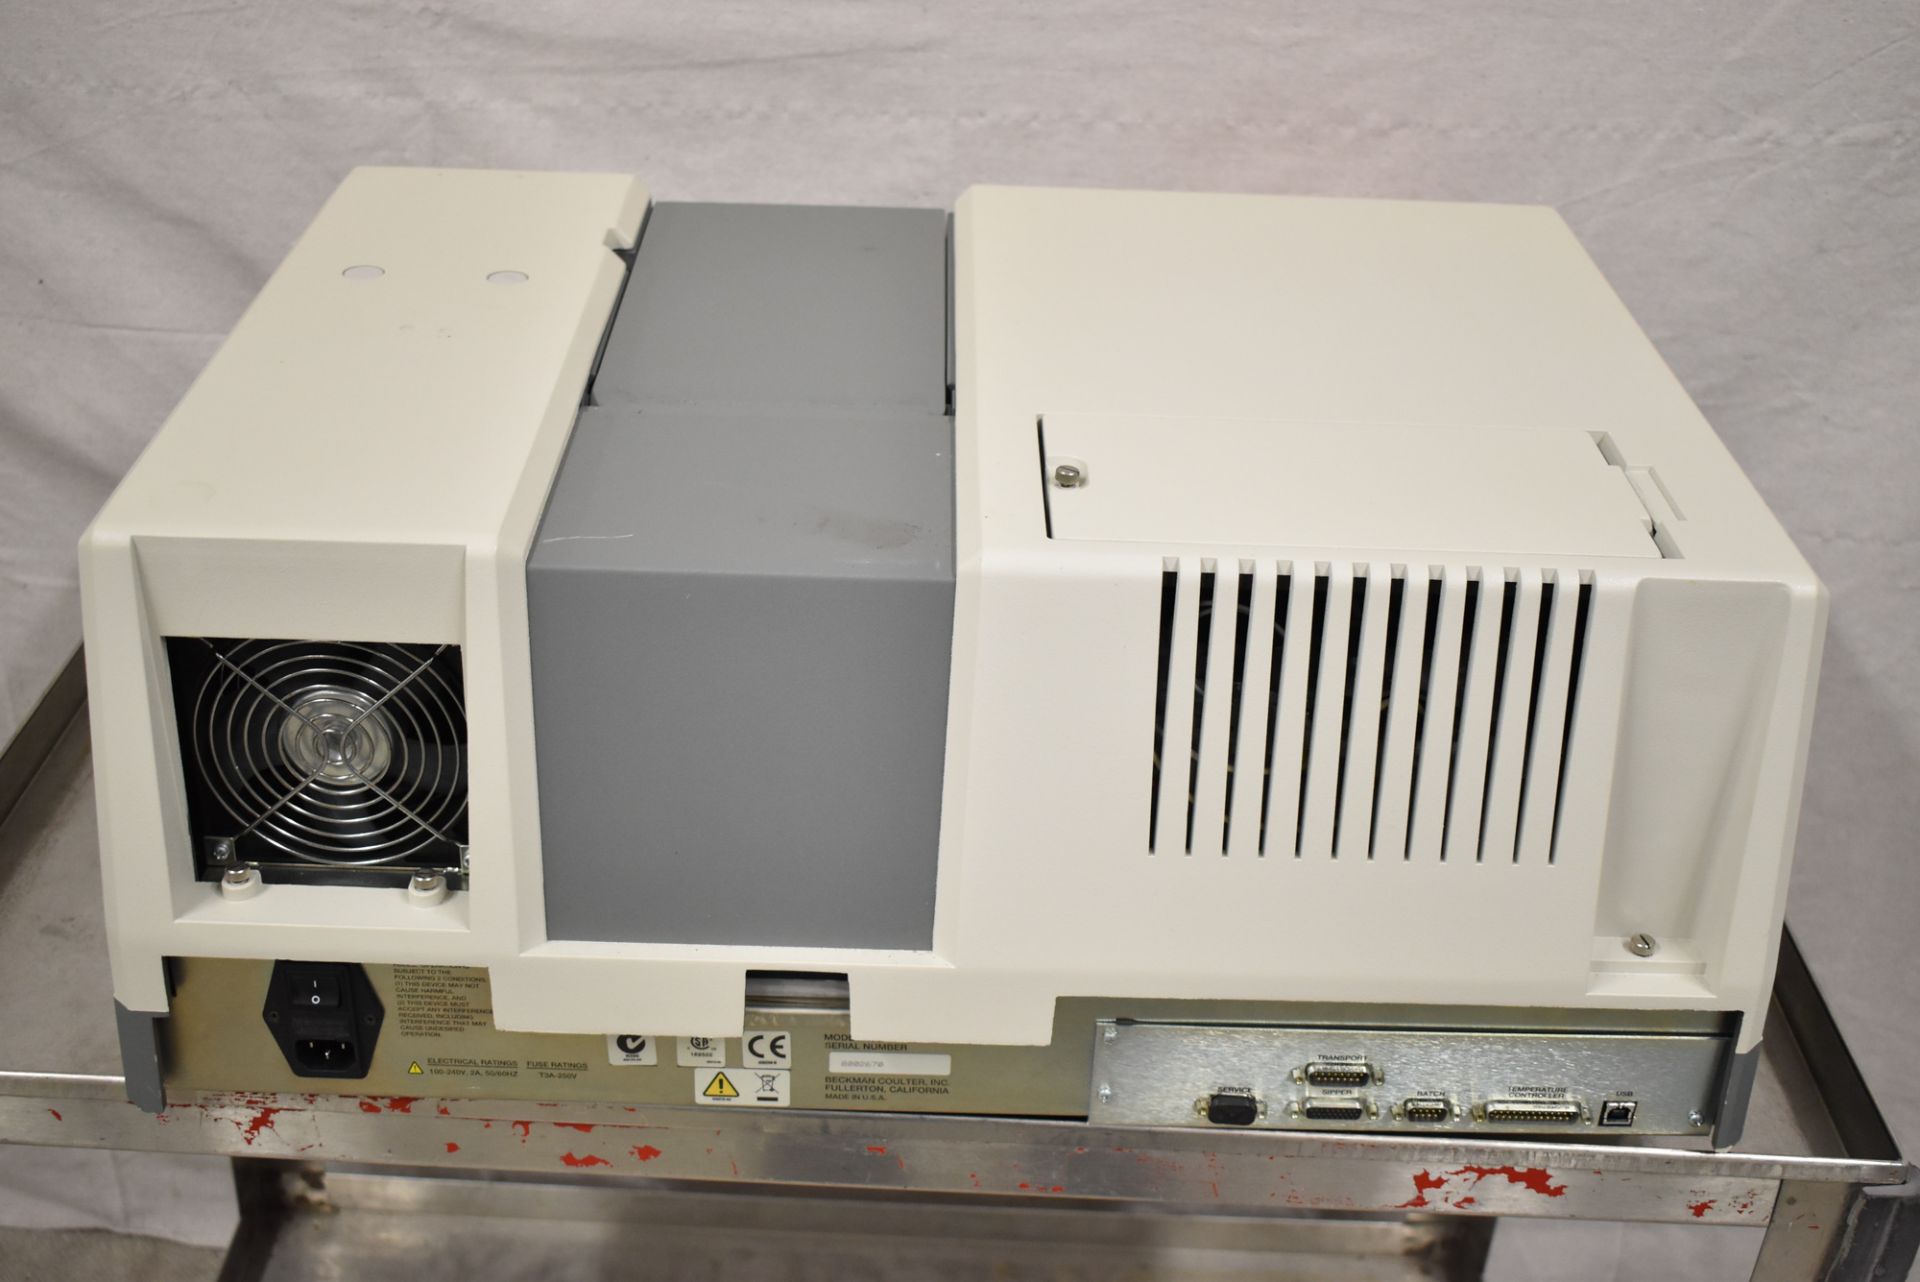 BECKMAN COULTER DU 800 SPECTROPHOTOMETER WITH DU800 UV/VIS VER 3.0 SYSTEM & APPLICATIONS SOFTWARE, - Image 10 of 13